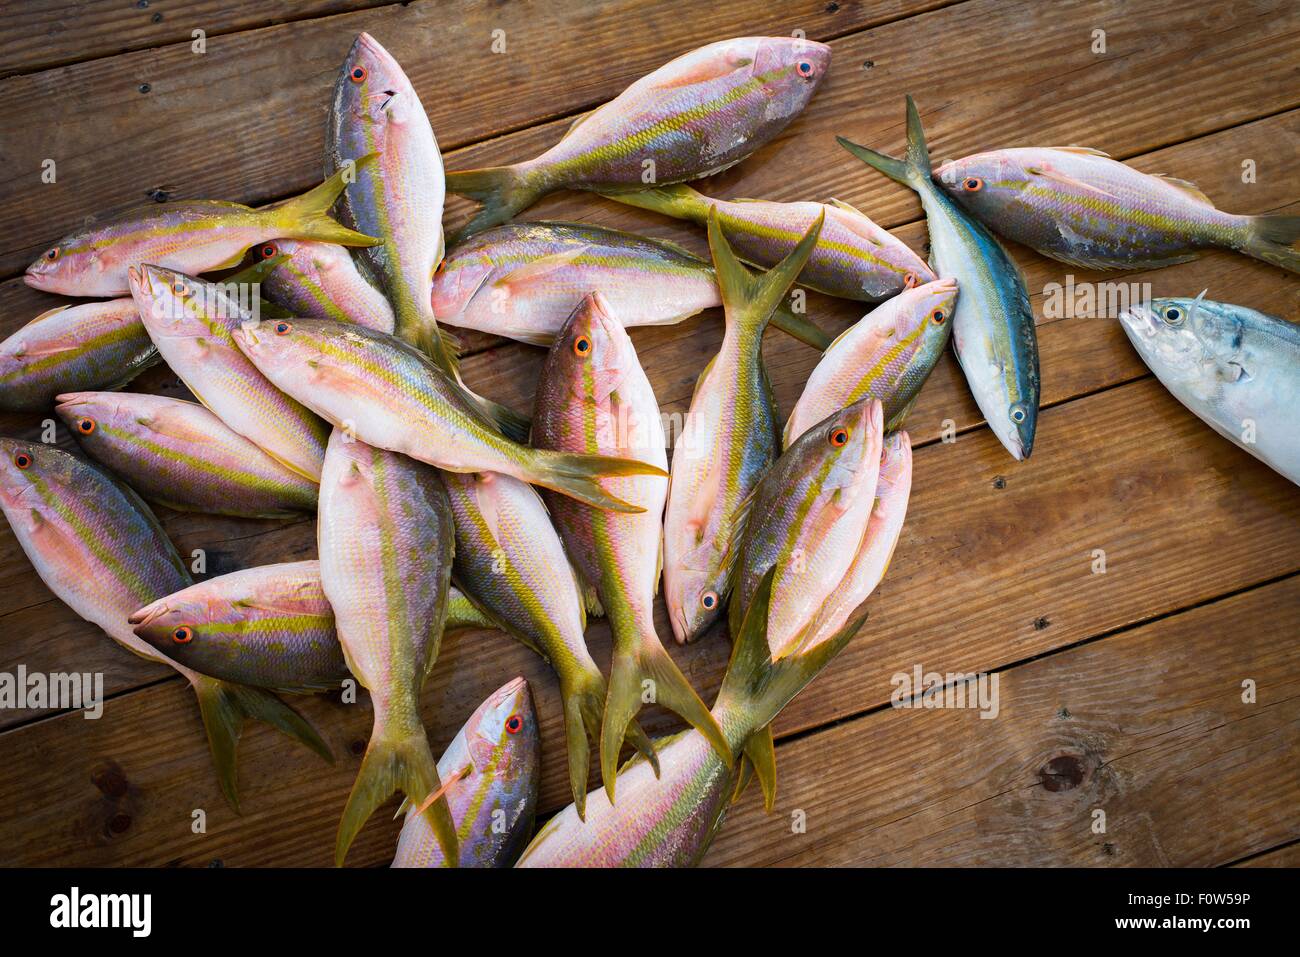 Catturati e dentici Limanda Pesce sul molo in legno, Islamorada, Florida, Stati Uniti d'America Foto Stock